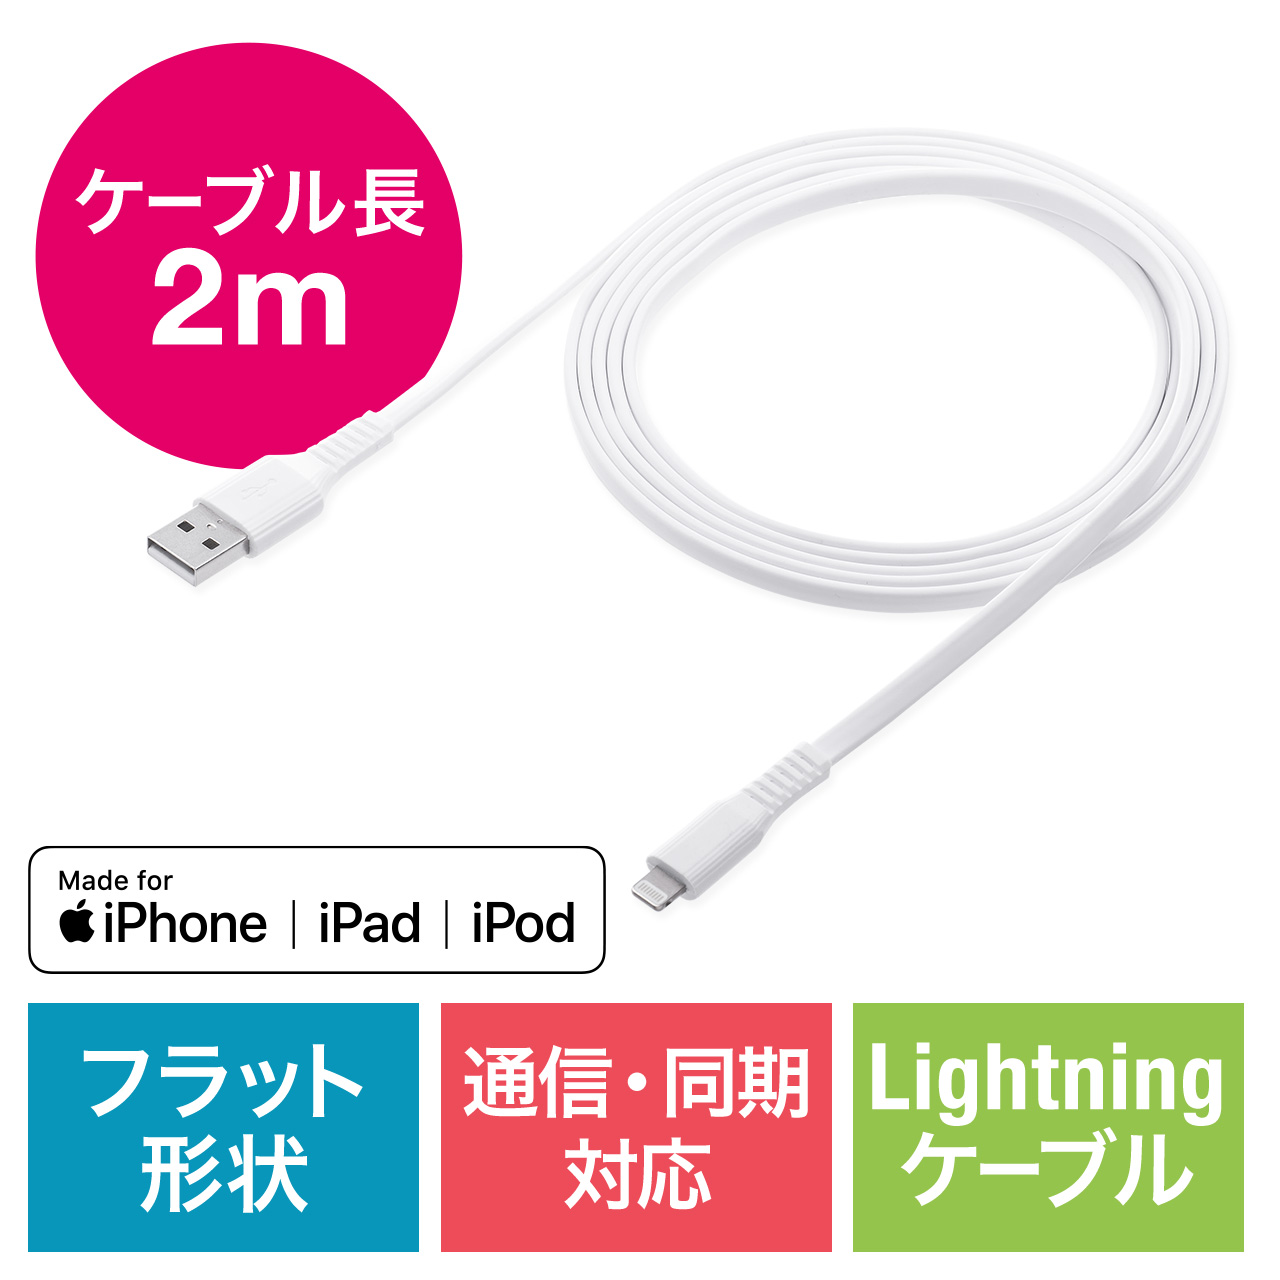 Lightningケーブル 2m 薄型 フラットケーブル iPhone iPad 充電ケーブル Apple MFi認証品 ホワイト  500-IPLM026WKの通販ならサンワダイレクト